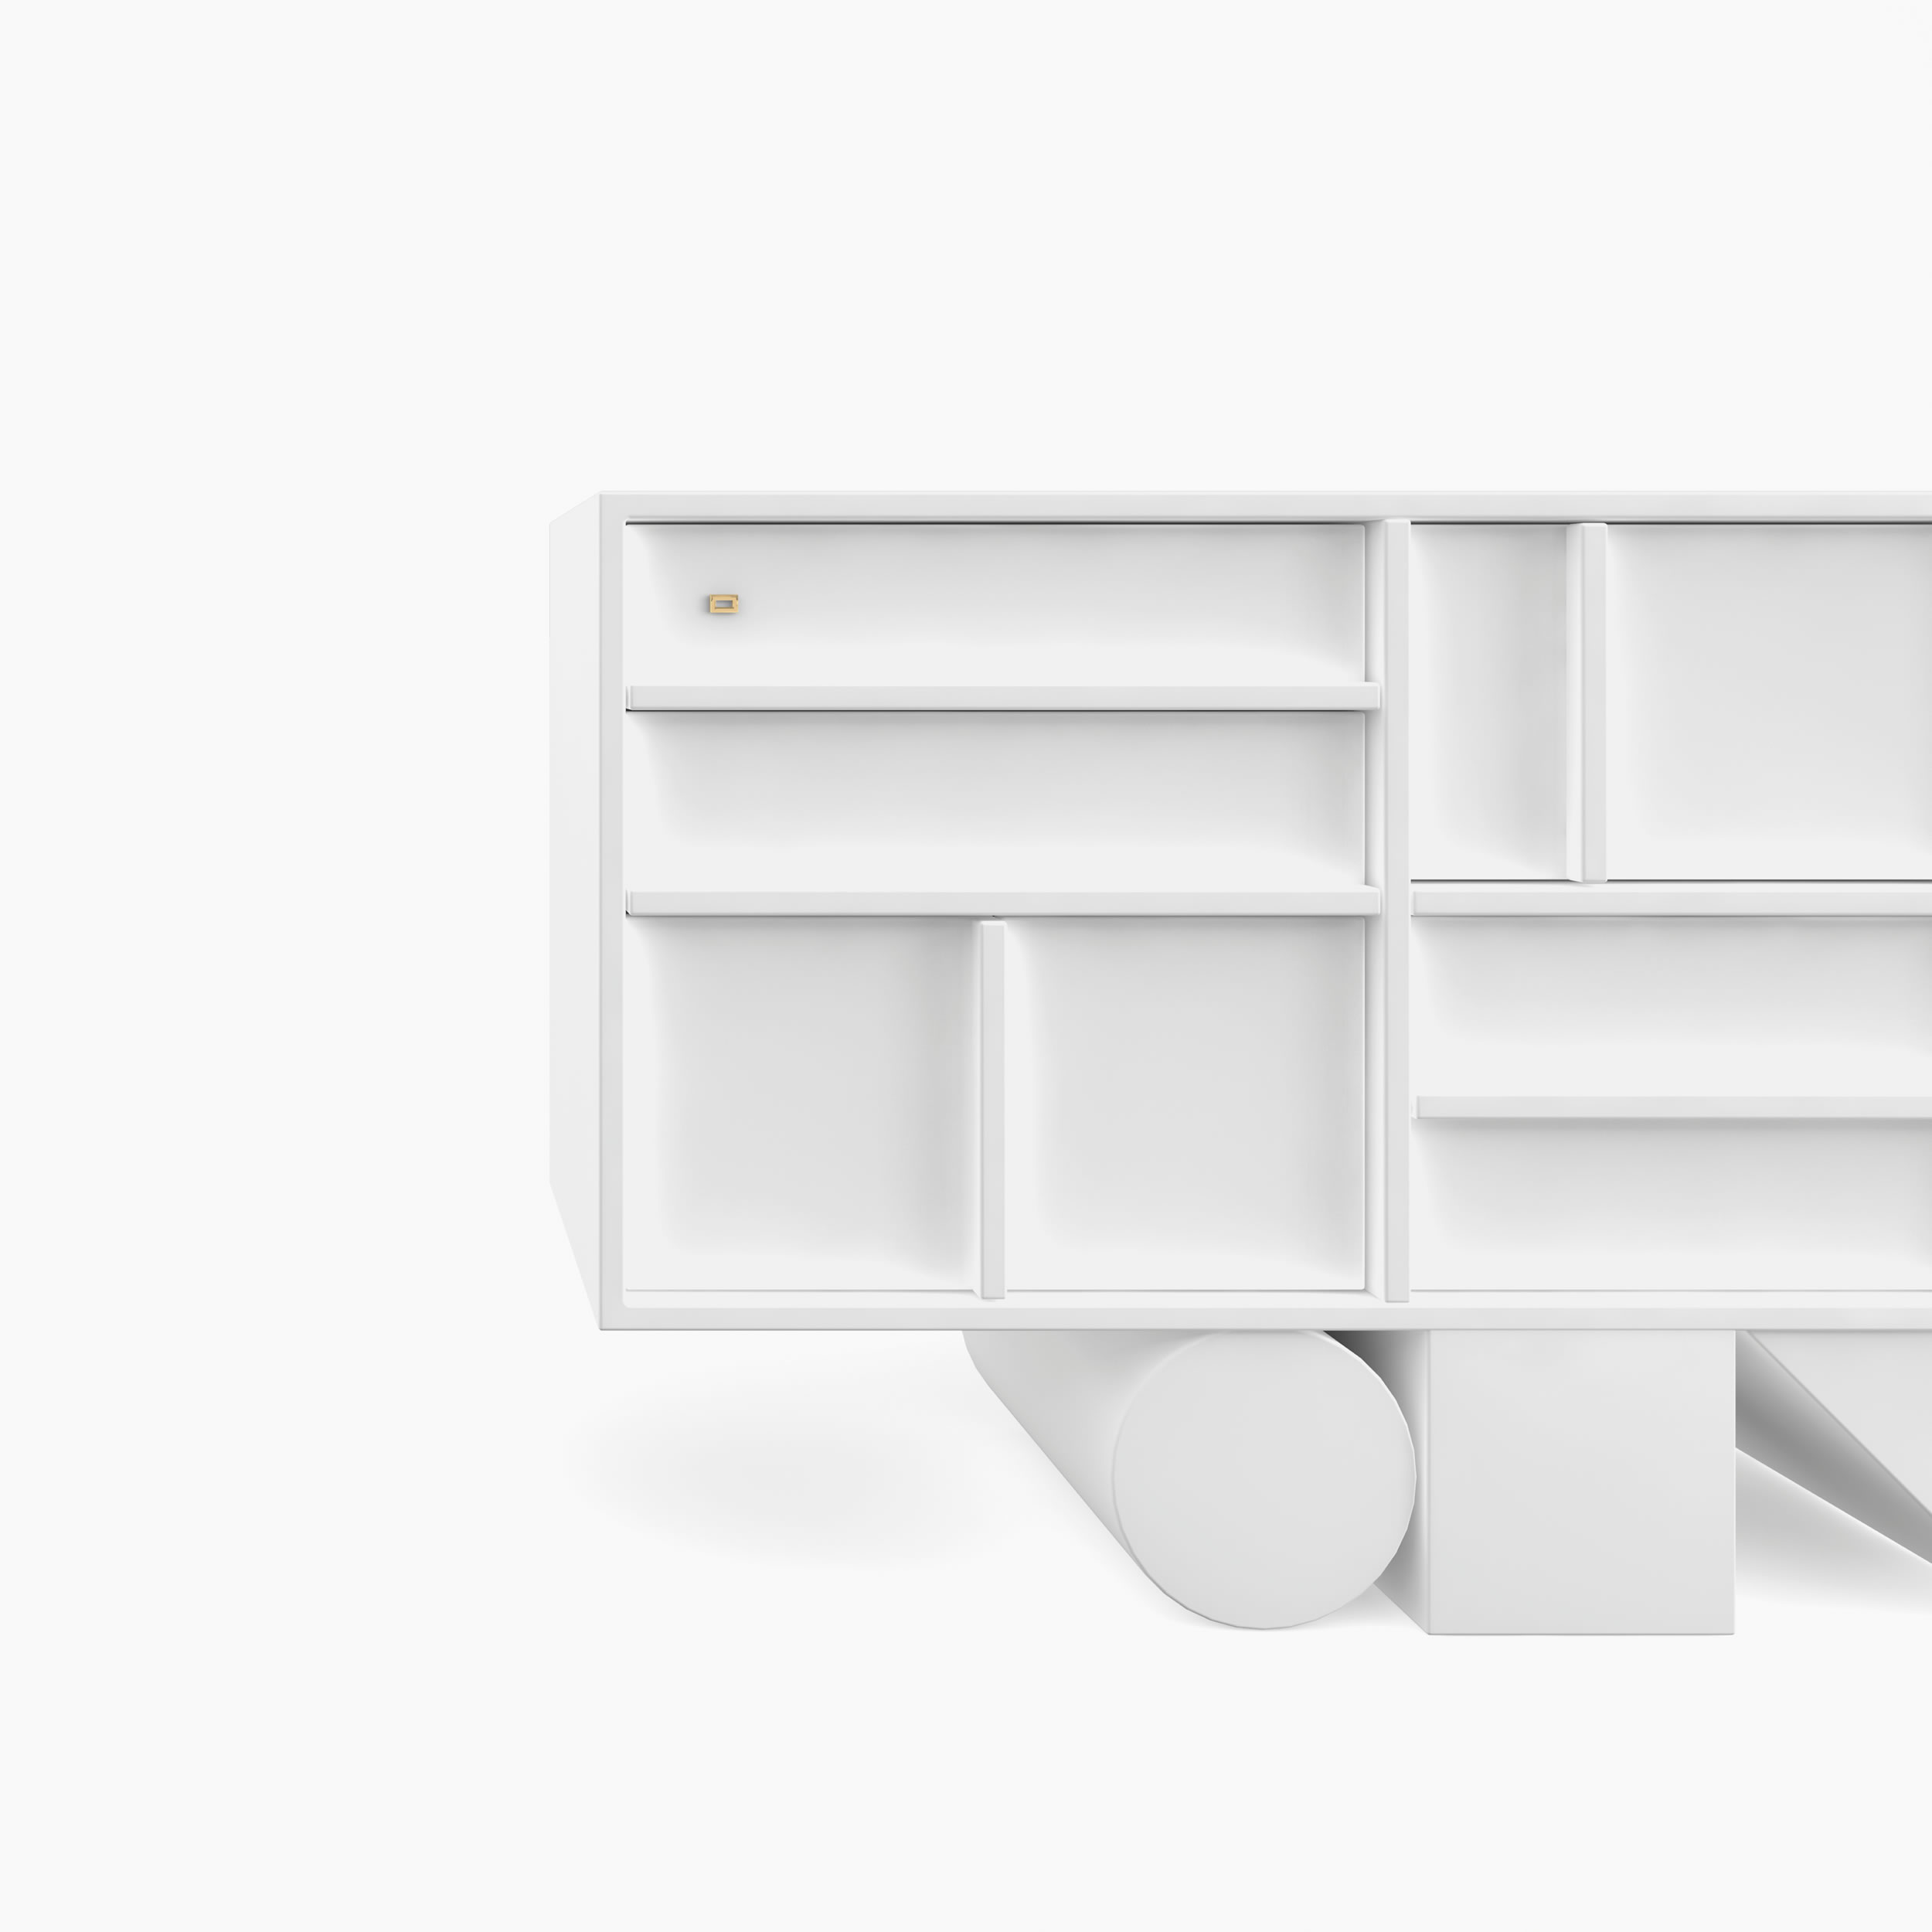 Sideboard wuerfel prisma zylinder weiss interior design Buero simple furniture Sideboards FS 13 FELIX SCHWAKE